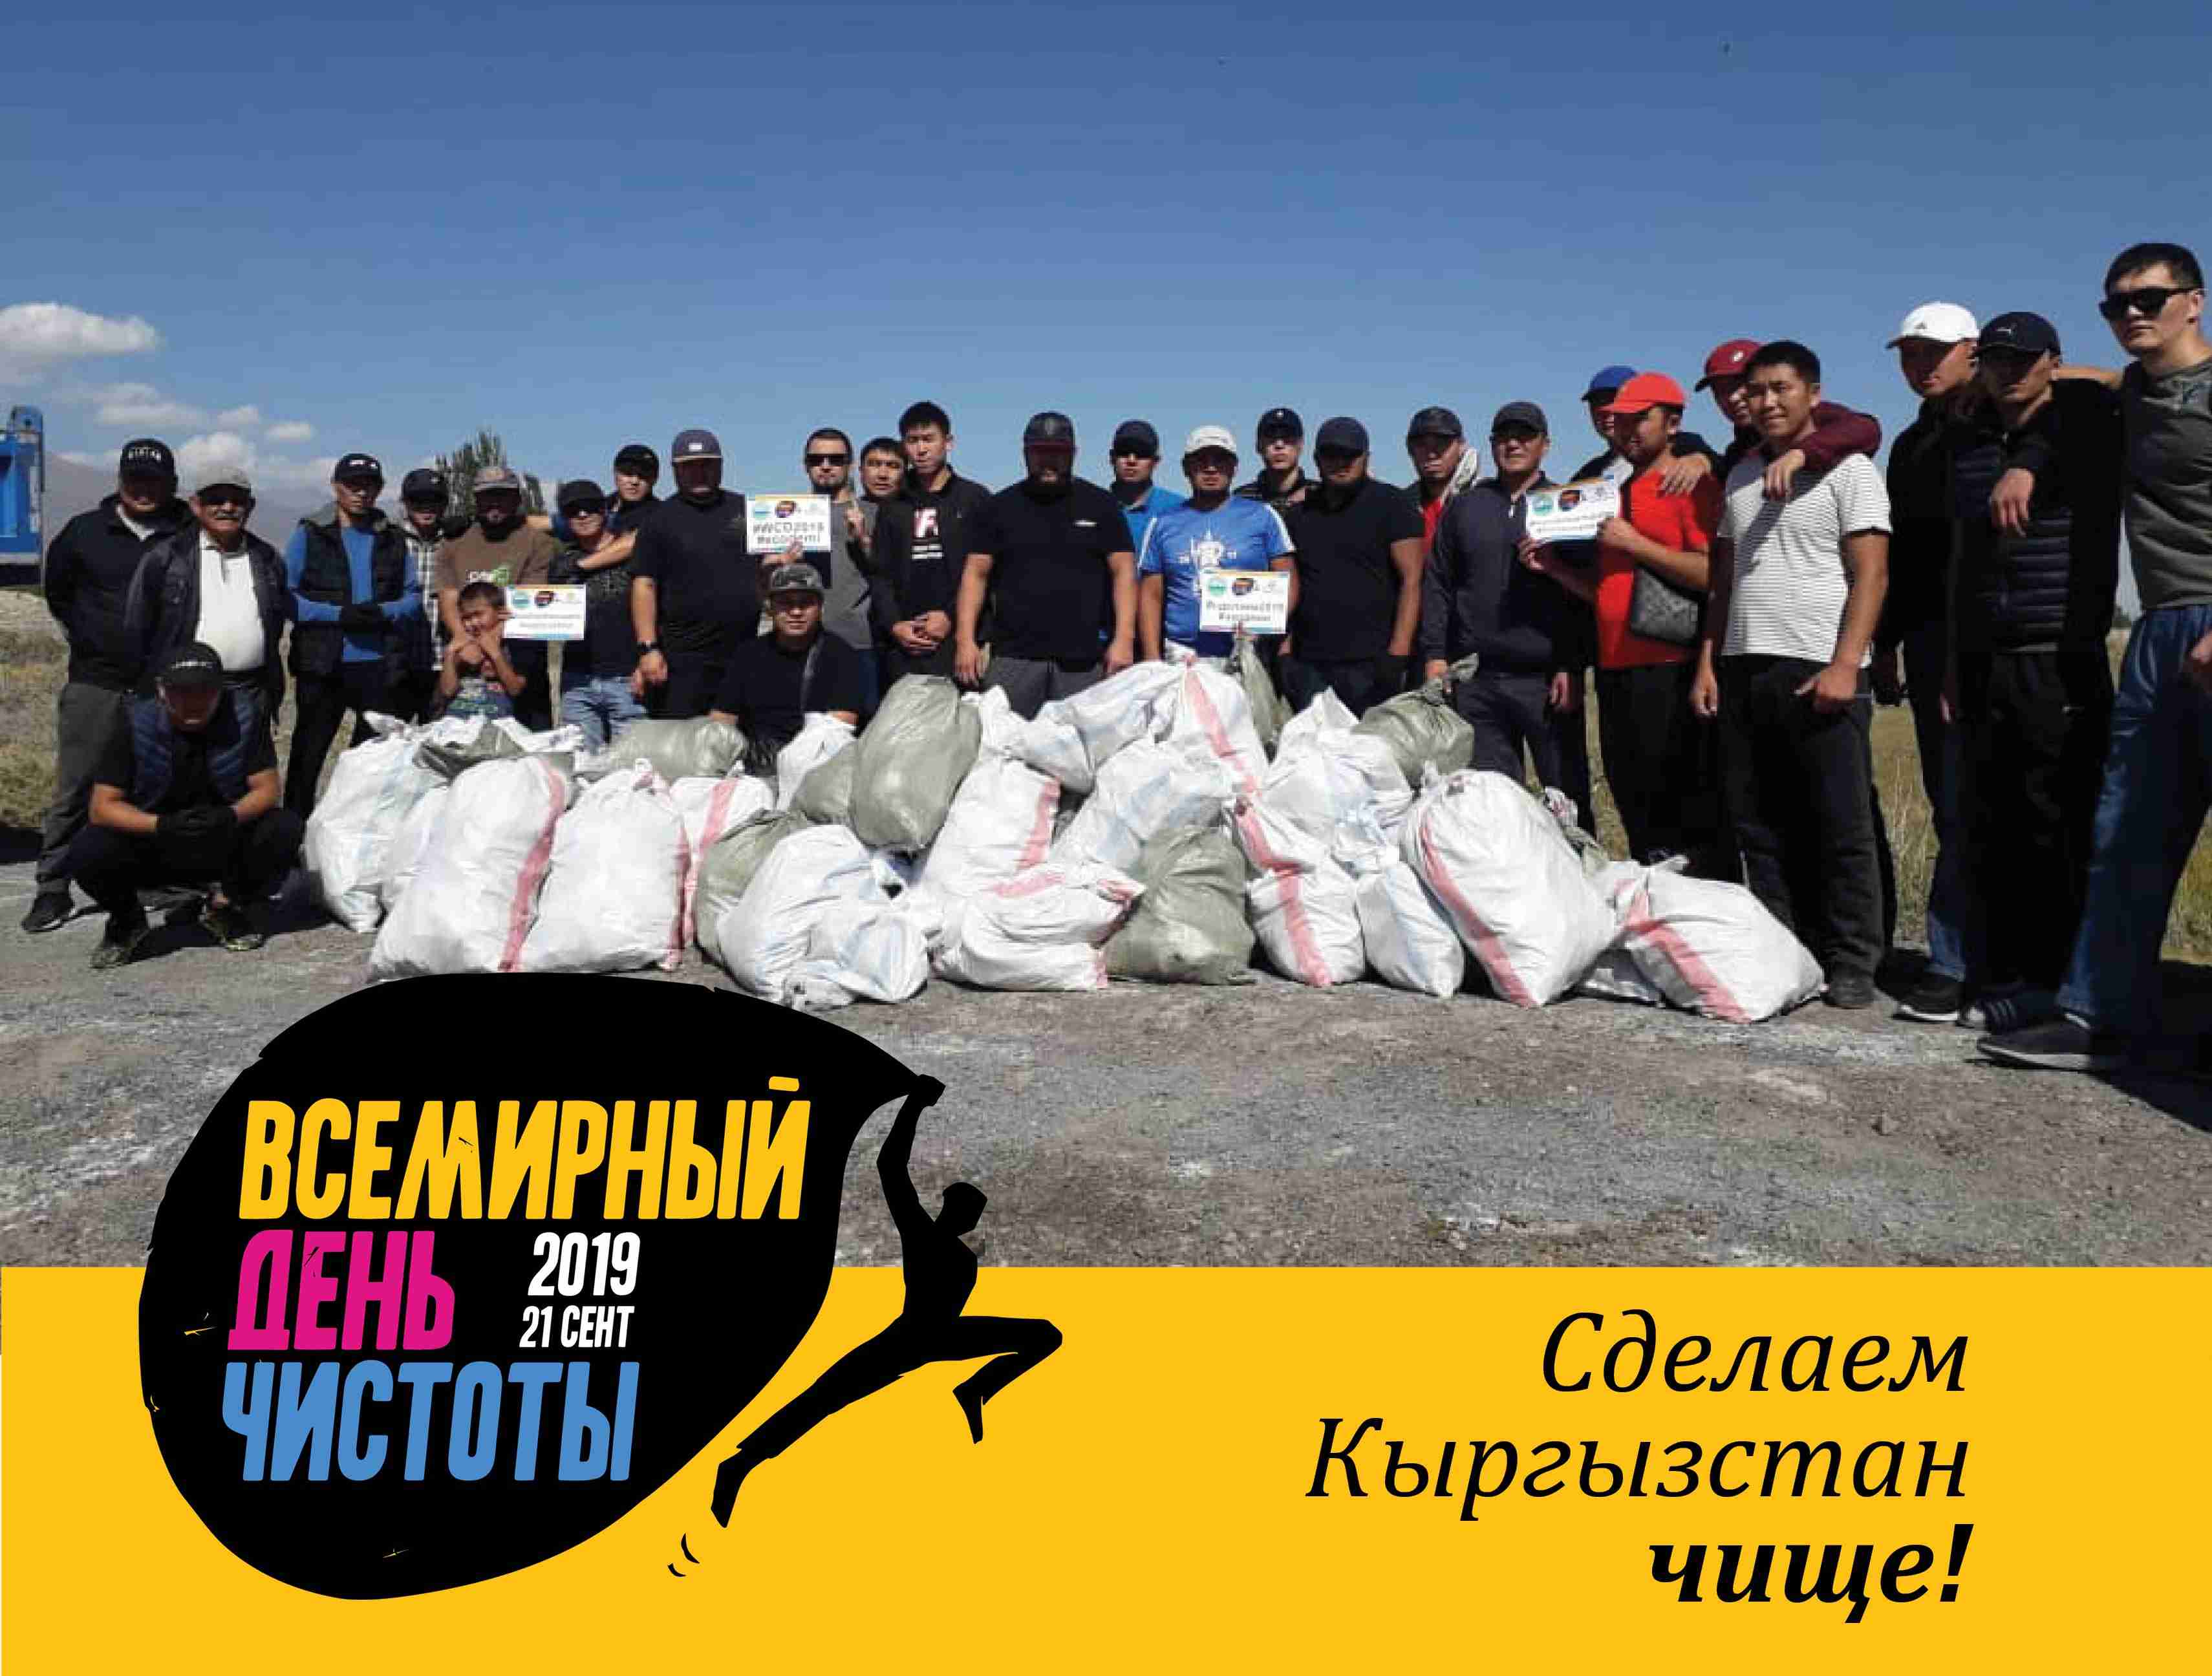 Почти 1 тысяча грузовиков мусора! Столько собрали в Кыргызстане во Всемирный день чистоты